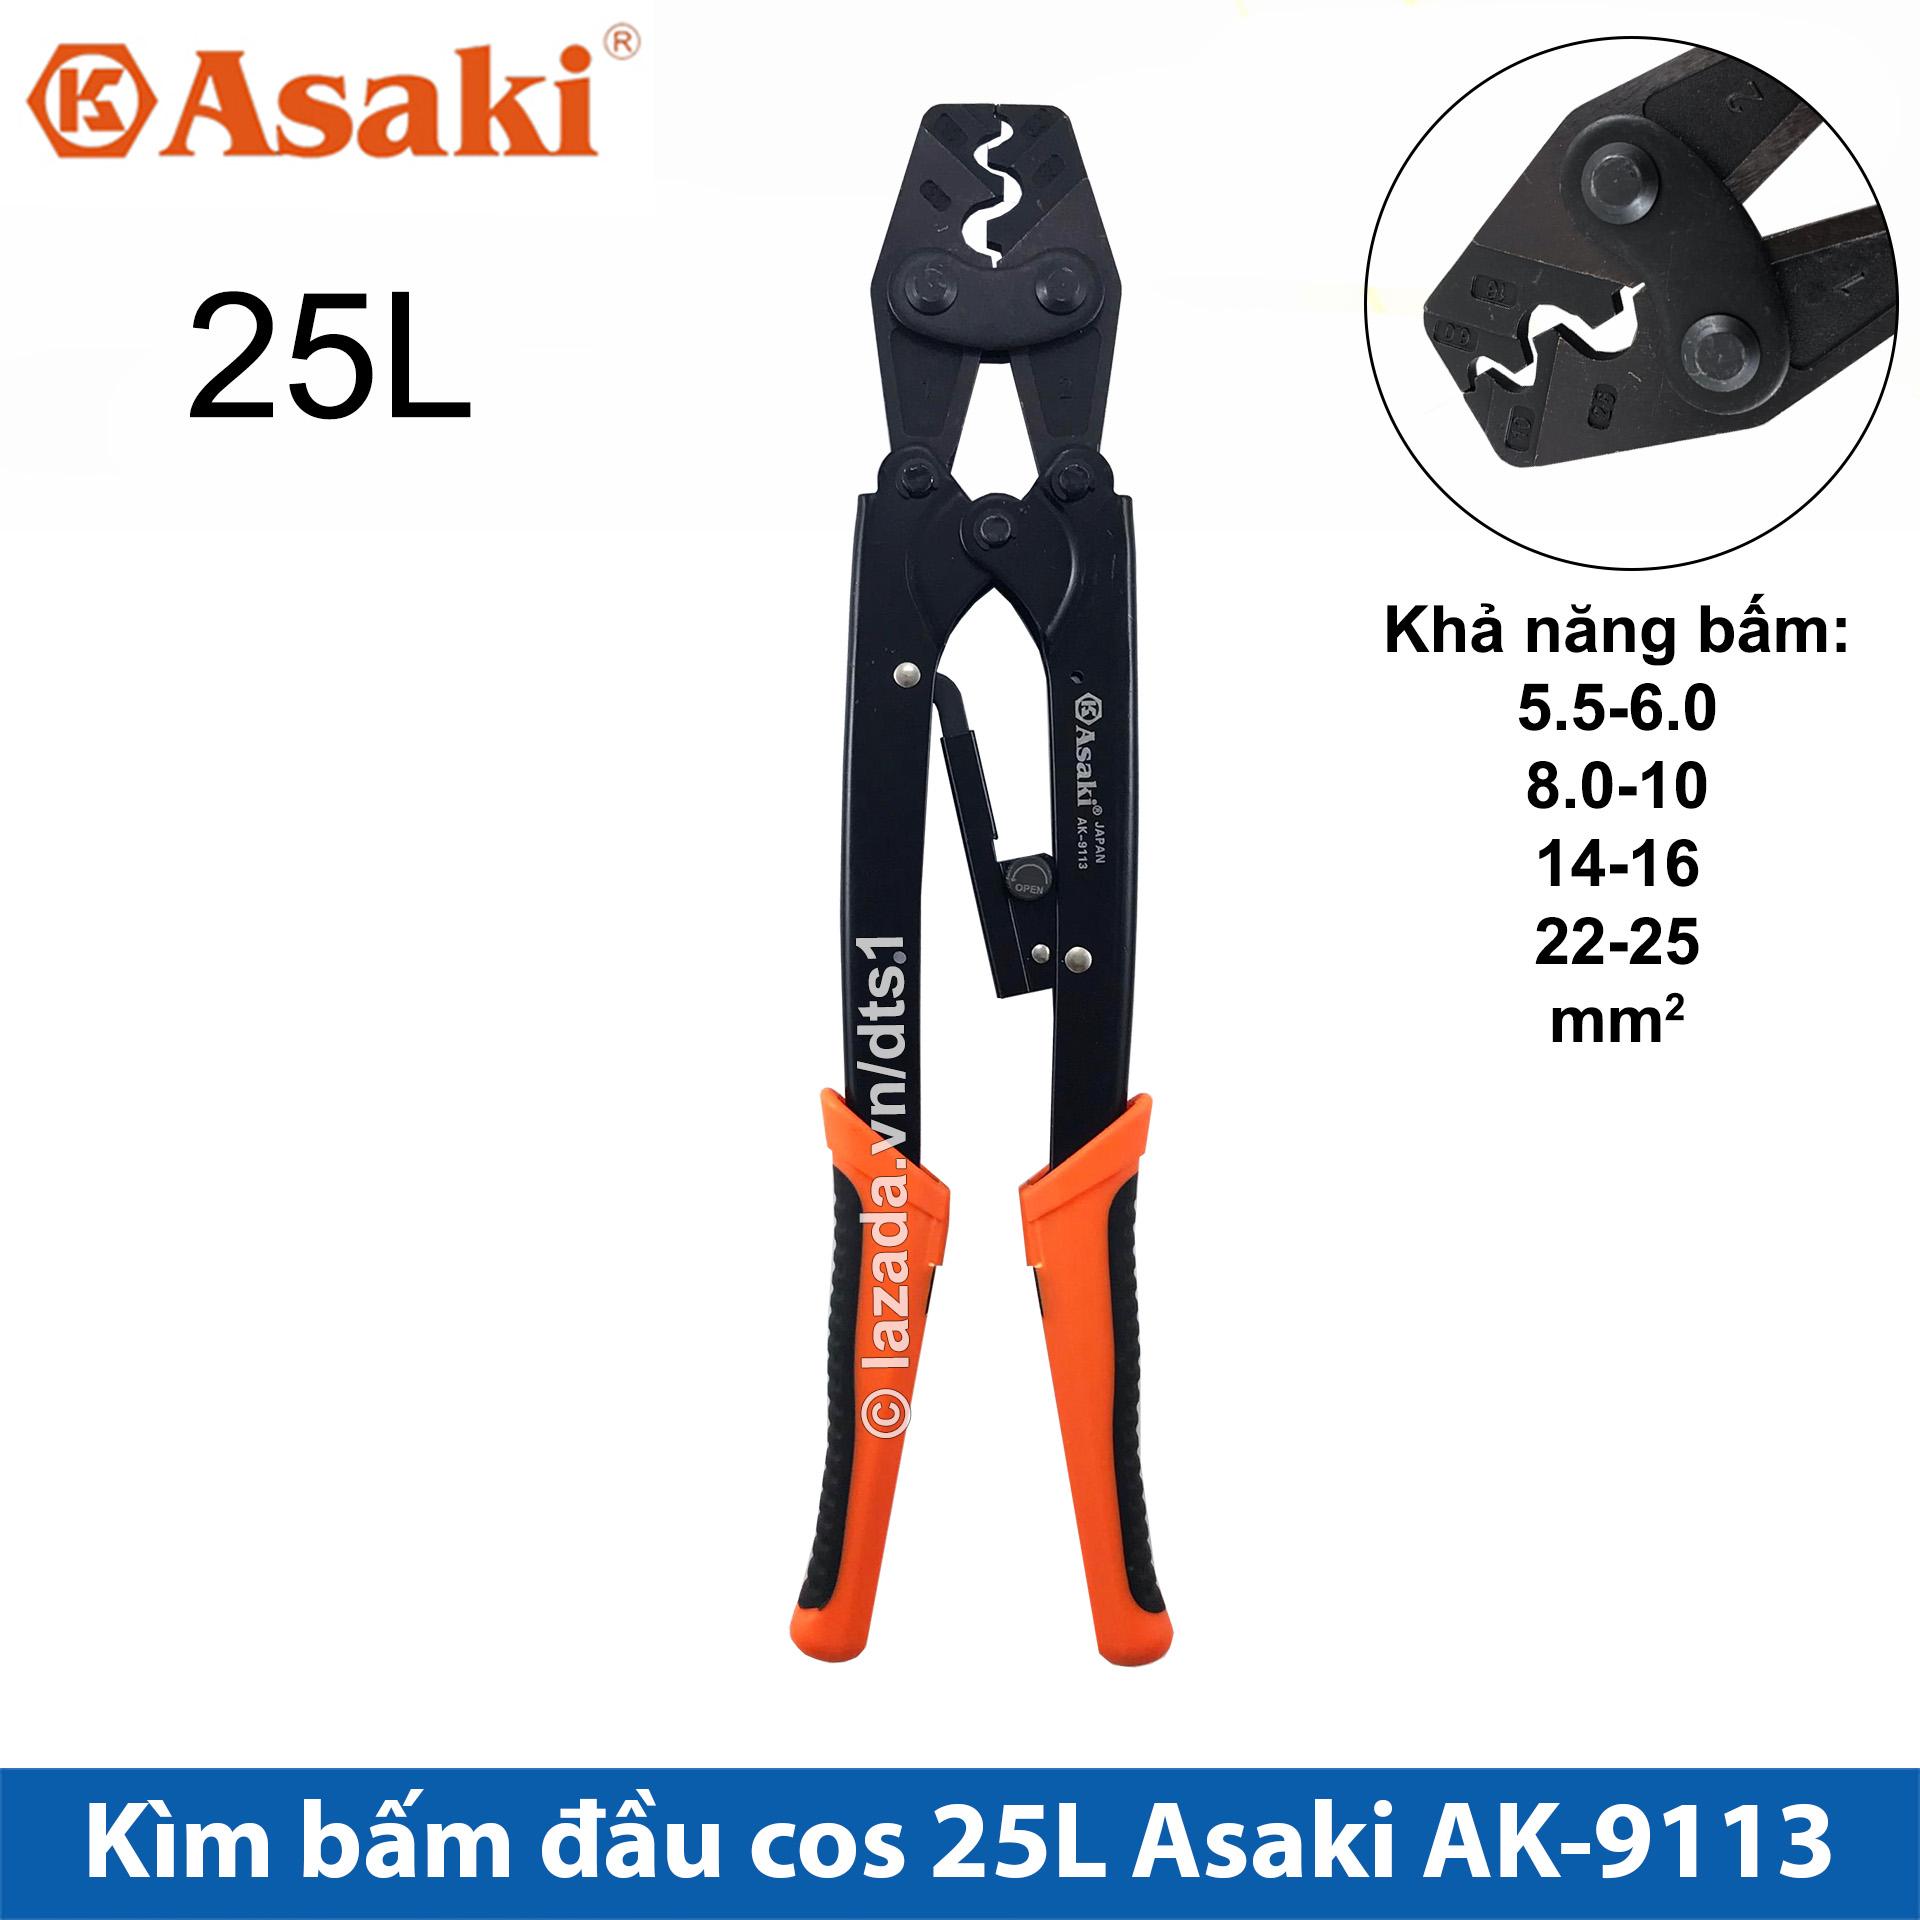 Kìm bấm cos 25L 5.5 - 25mm2 Asaki AK-9113 Kềm bấm cốt 25L (Kìm bấm đầu cote Asaki) Thiết kế theo dạng cộng lực để tăng lực bấm Đầu kìm chính xác bấm nhanh dễ dàng thao tác